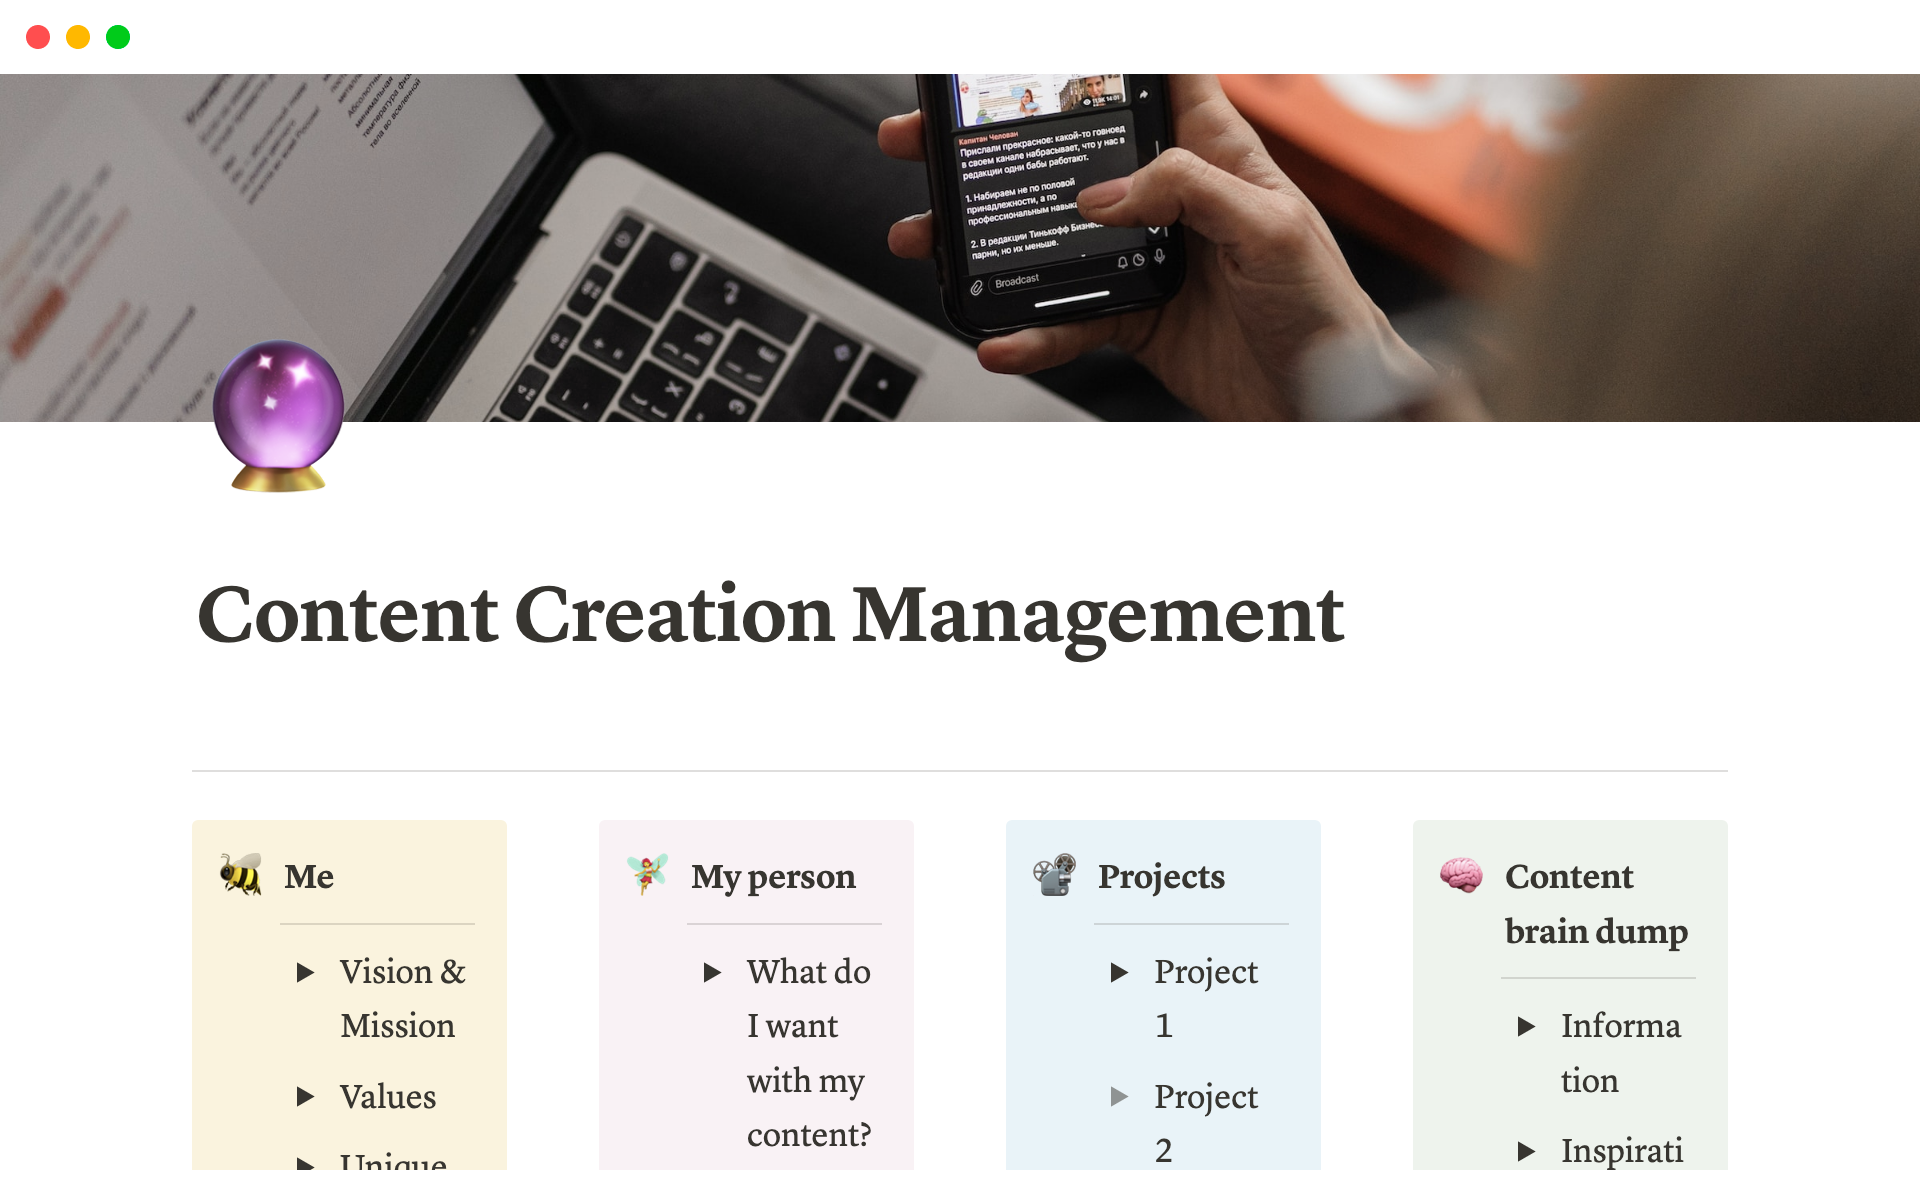 Aperçu du modèle de Content Creation Management